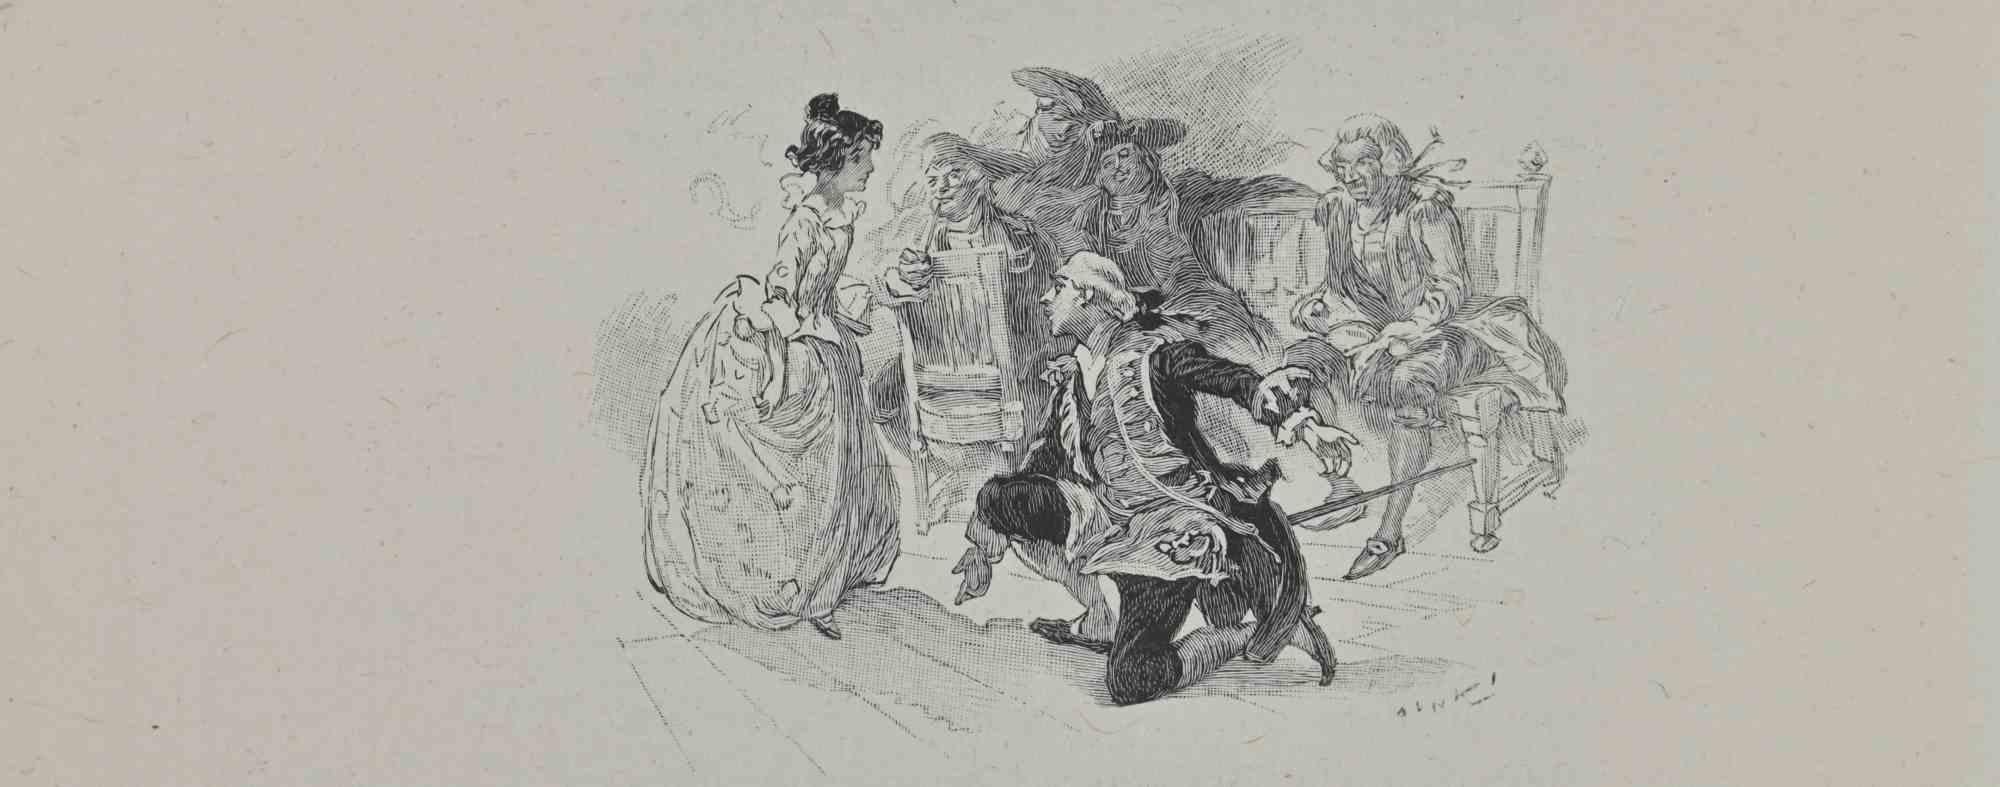 The Courtship - Lithograph by Hégésippe Moreau - 1838